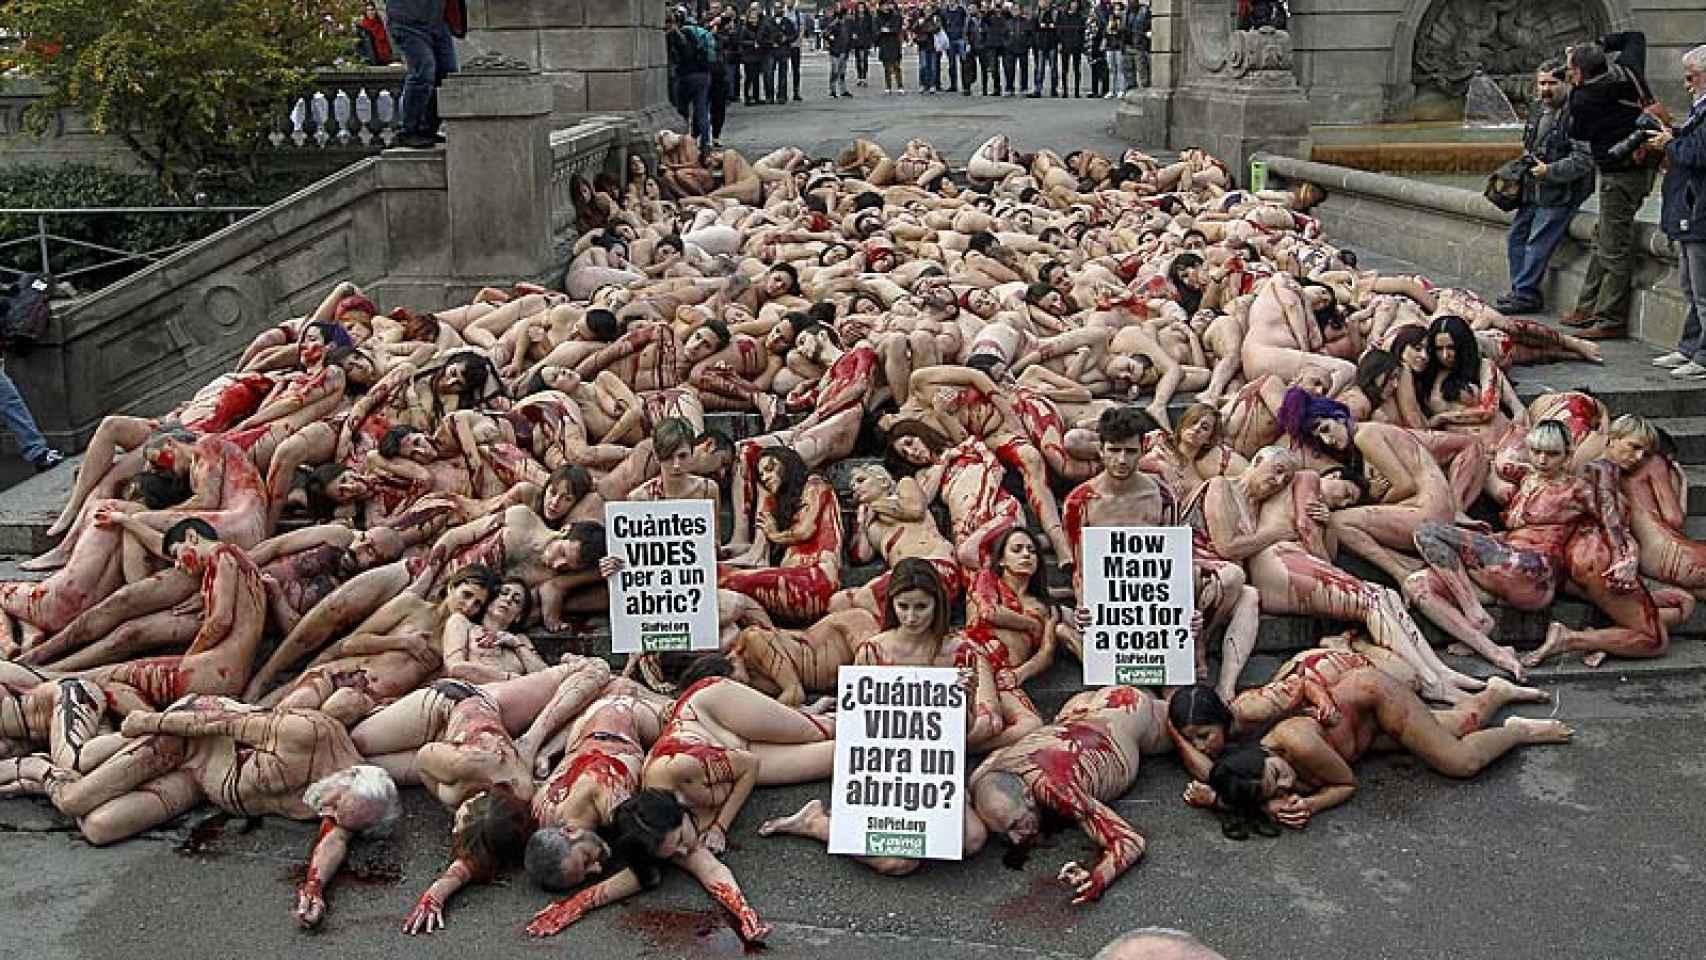 Animalistas desnudos protestan en Barcelona contra el uso de pieles para confeccionar abrigos